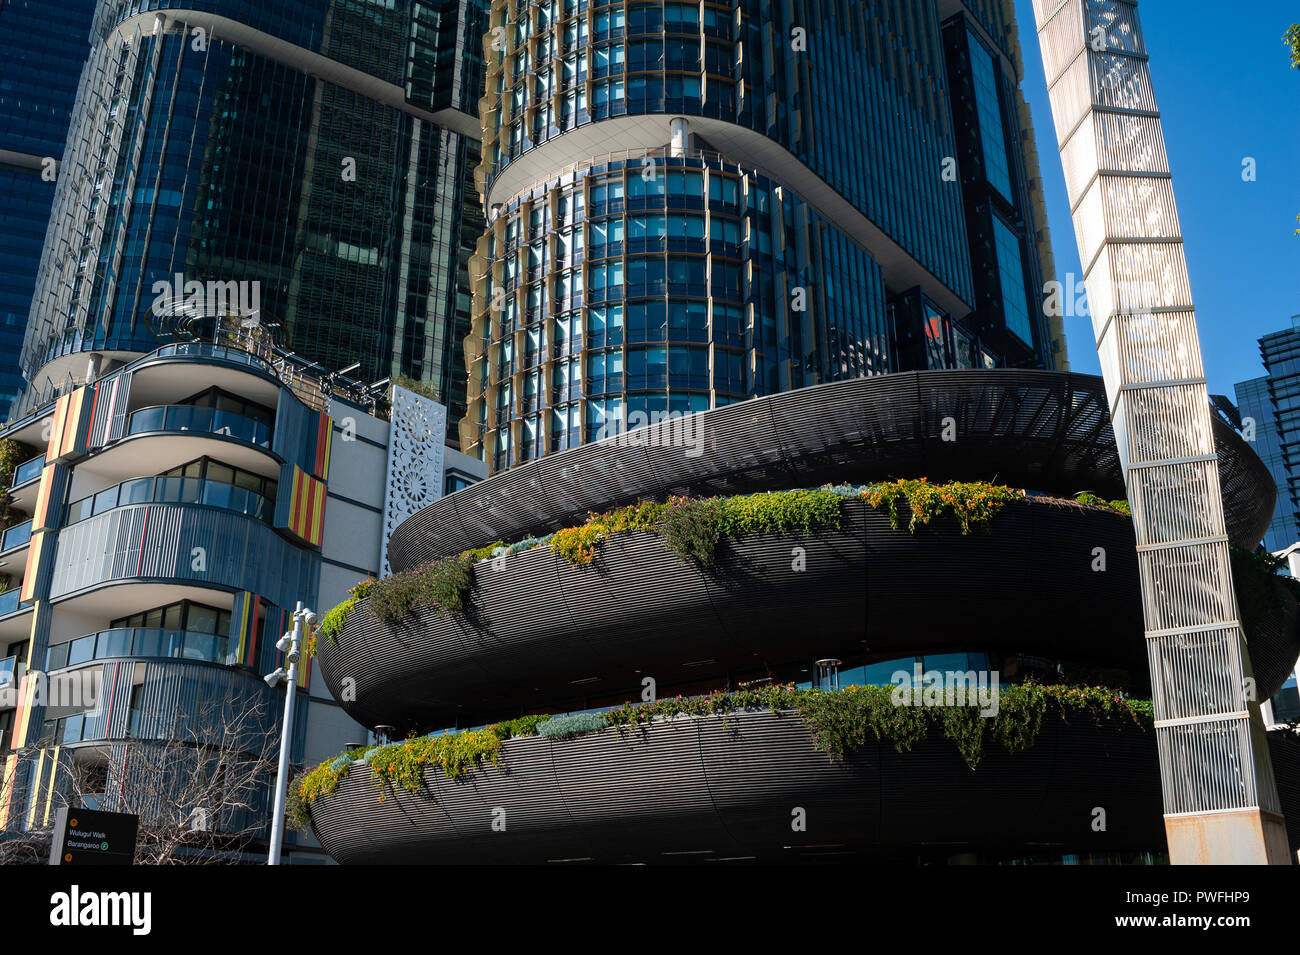 16.09.2018, Sydney, New South Wales, Australia - A la vista de los modernos edificios residenciales de la residencia y oficina de Alexander torres en Barangaroo. Foto de stock